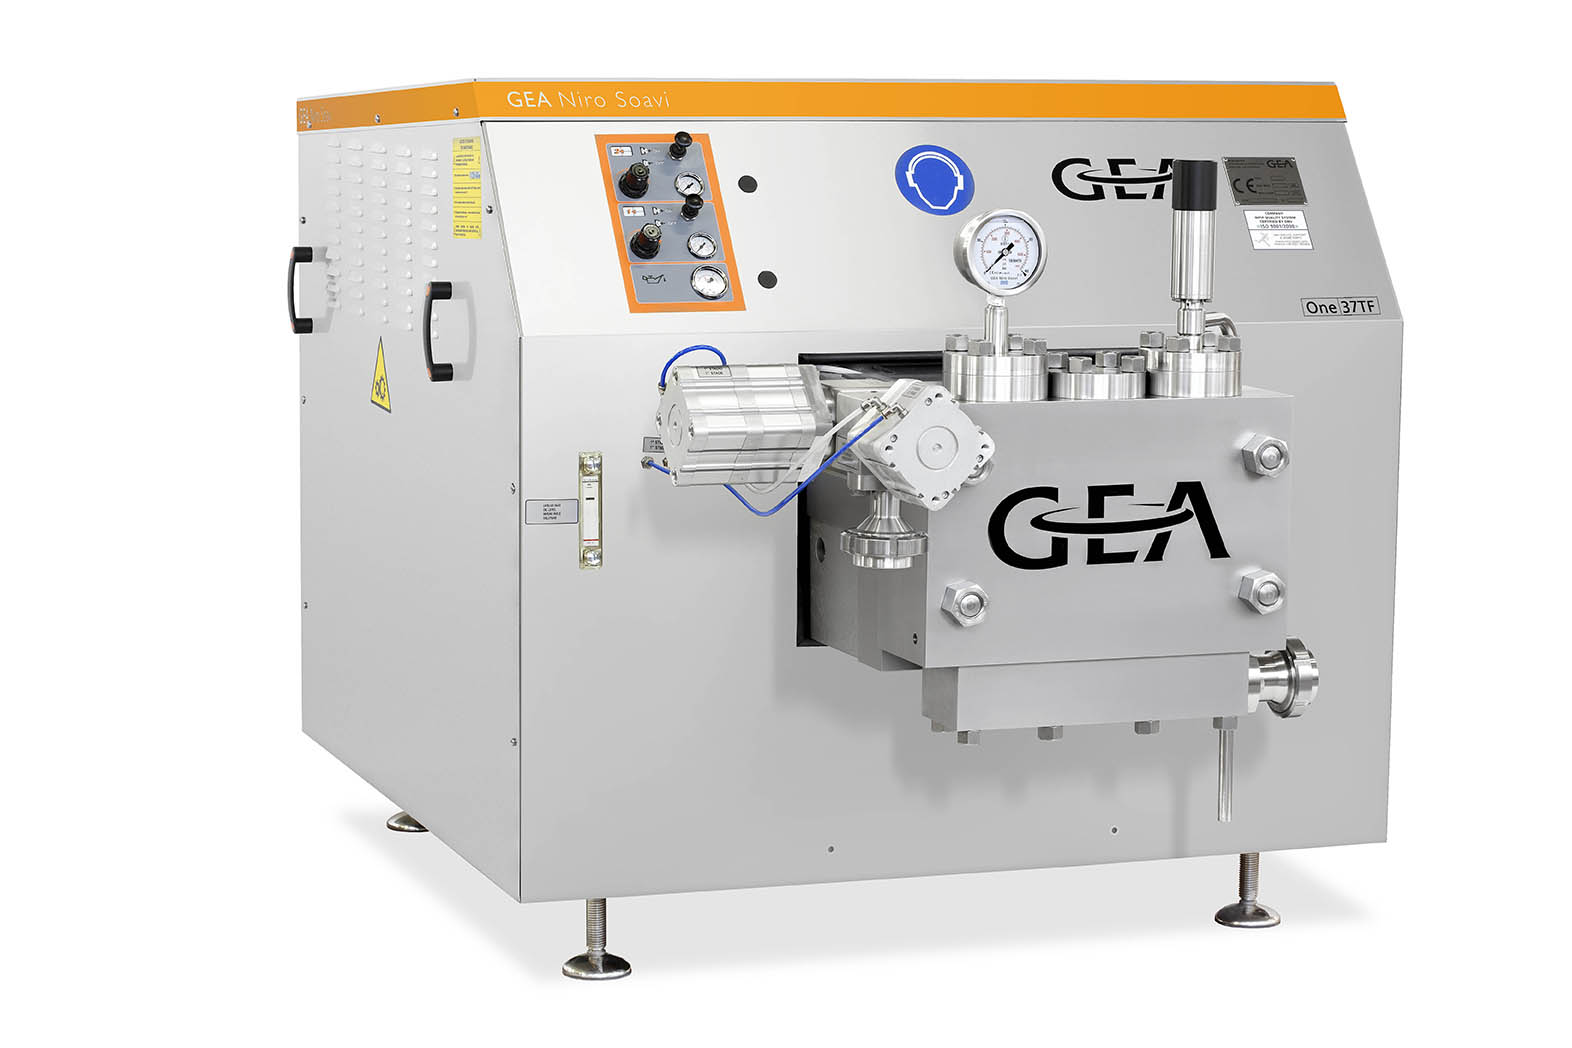 هموژنایزر - هموژنایزر GEA - دستگاه هموژنایزر - شرکت GEA - GEA Niro Soavi - شرکت گ.آ - homogenizer - GEA homogenizer - One37TF